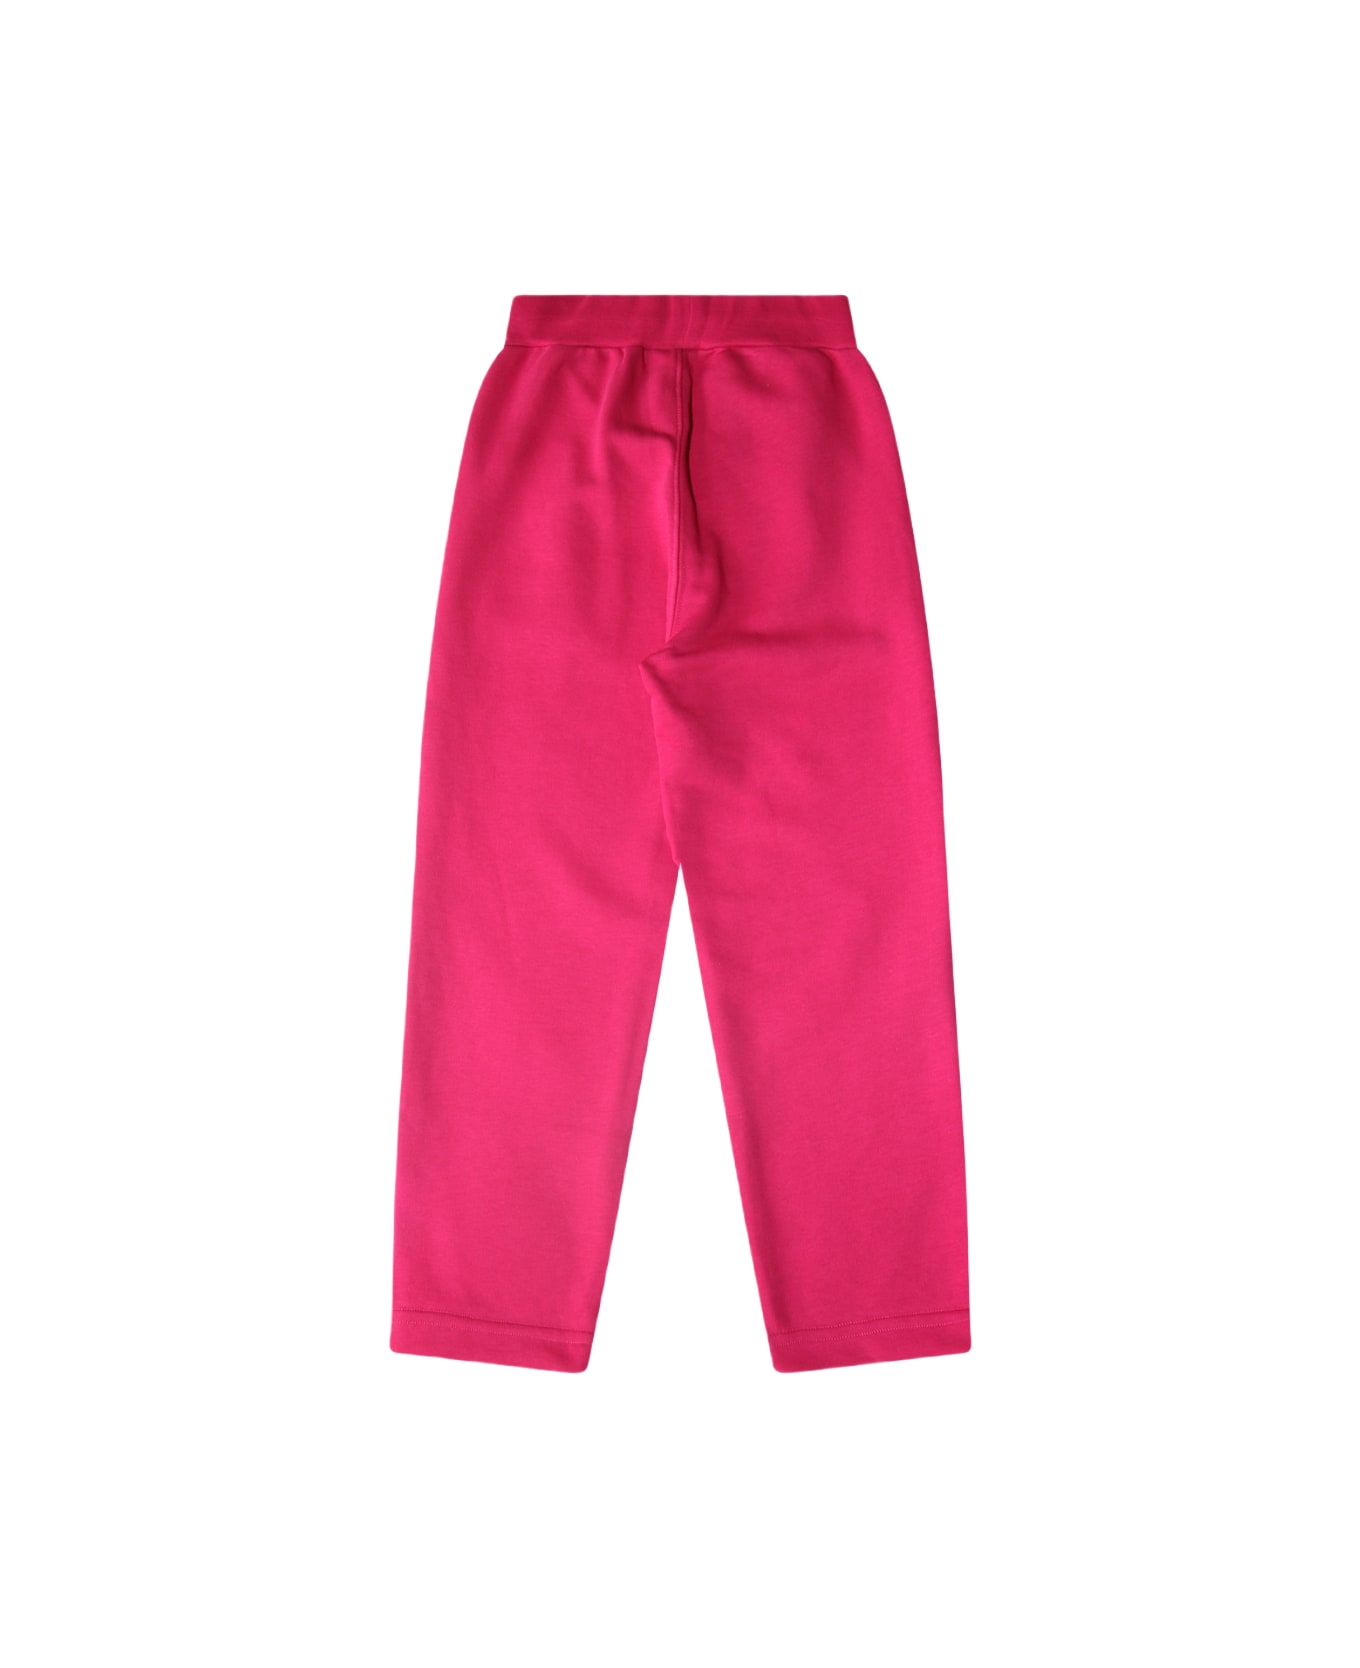 Monnalisa Pink Cotton Pants - Pink